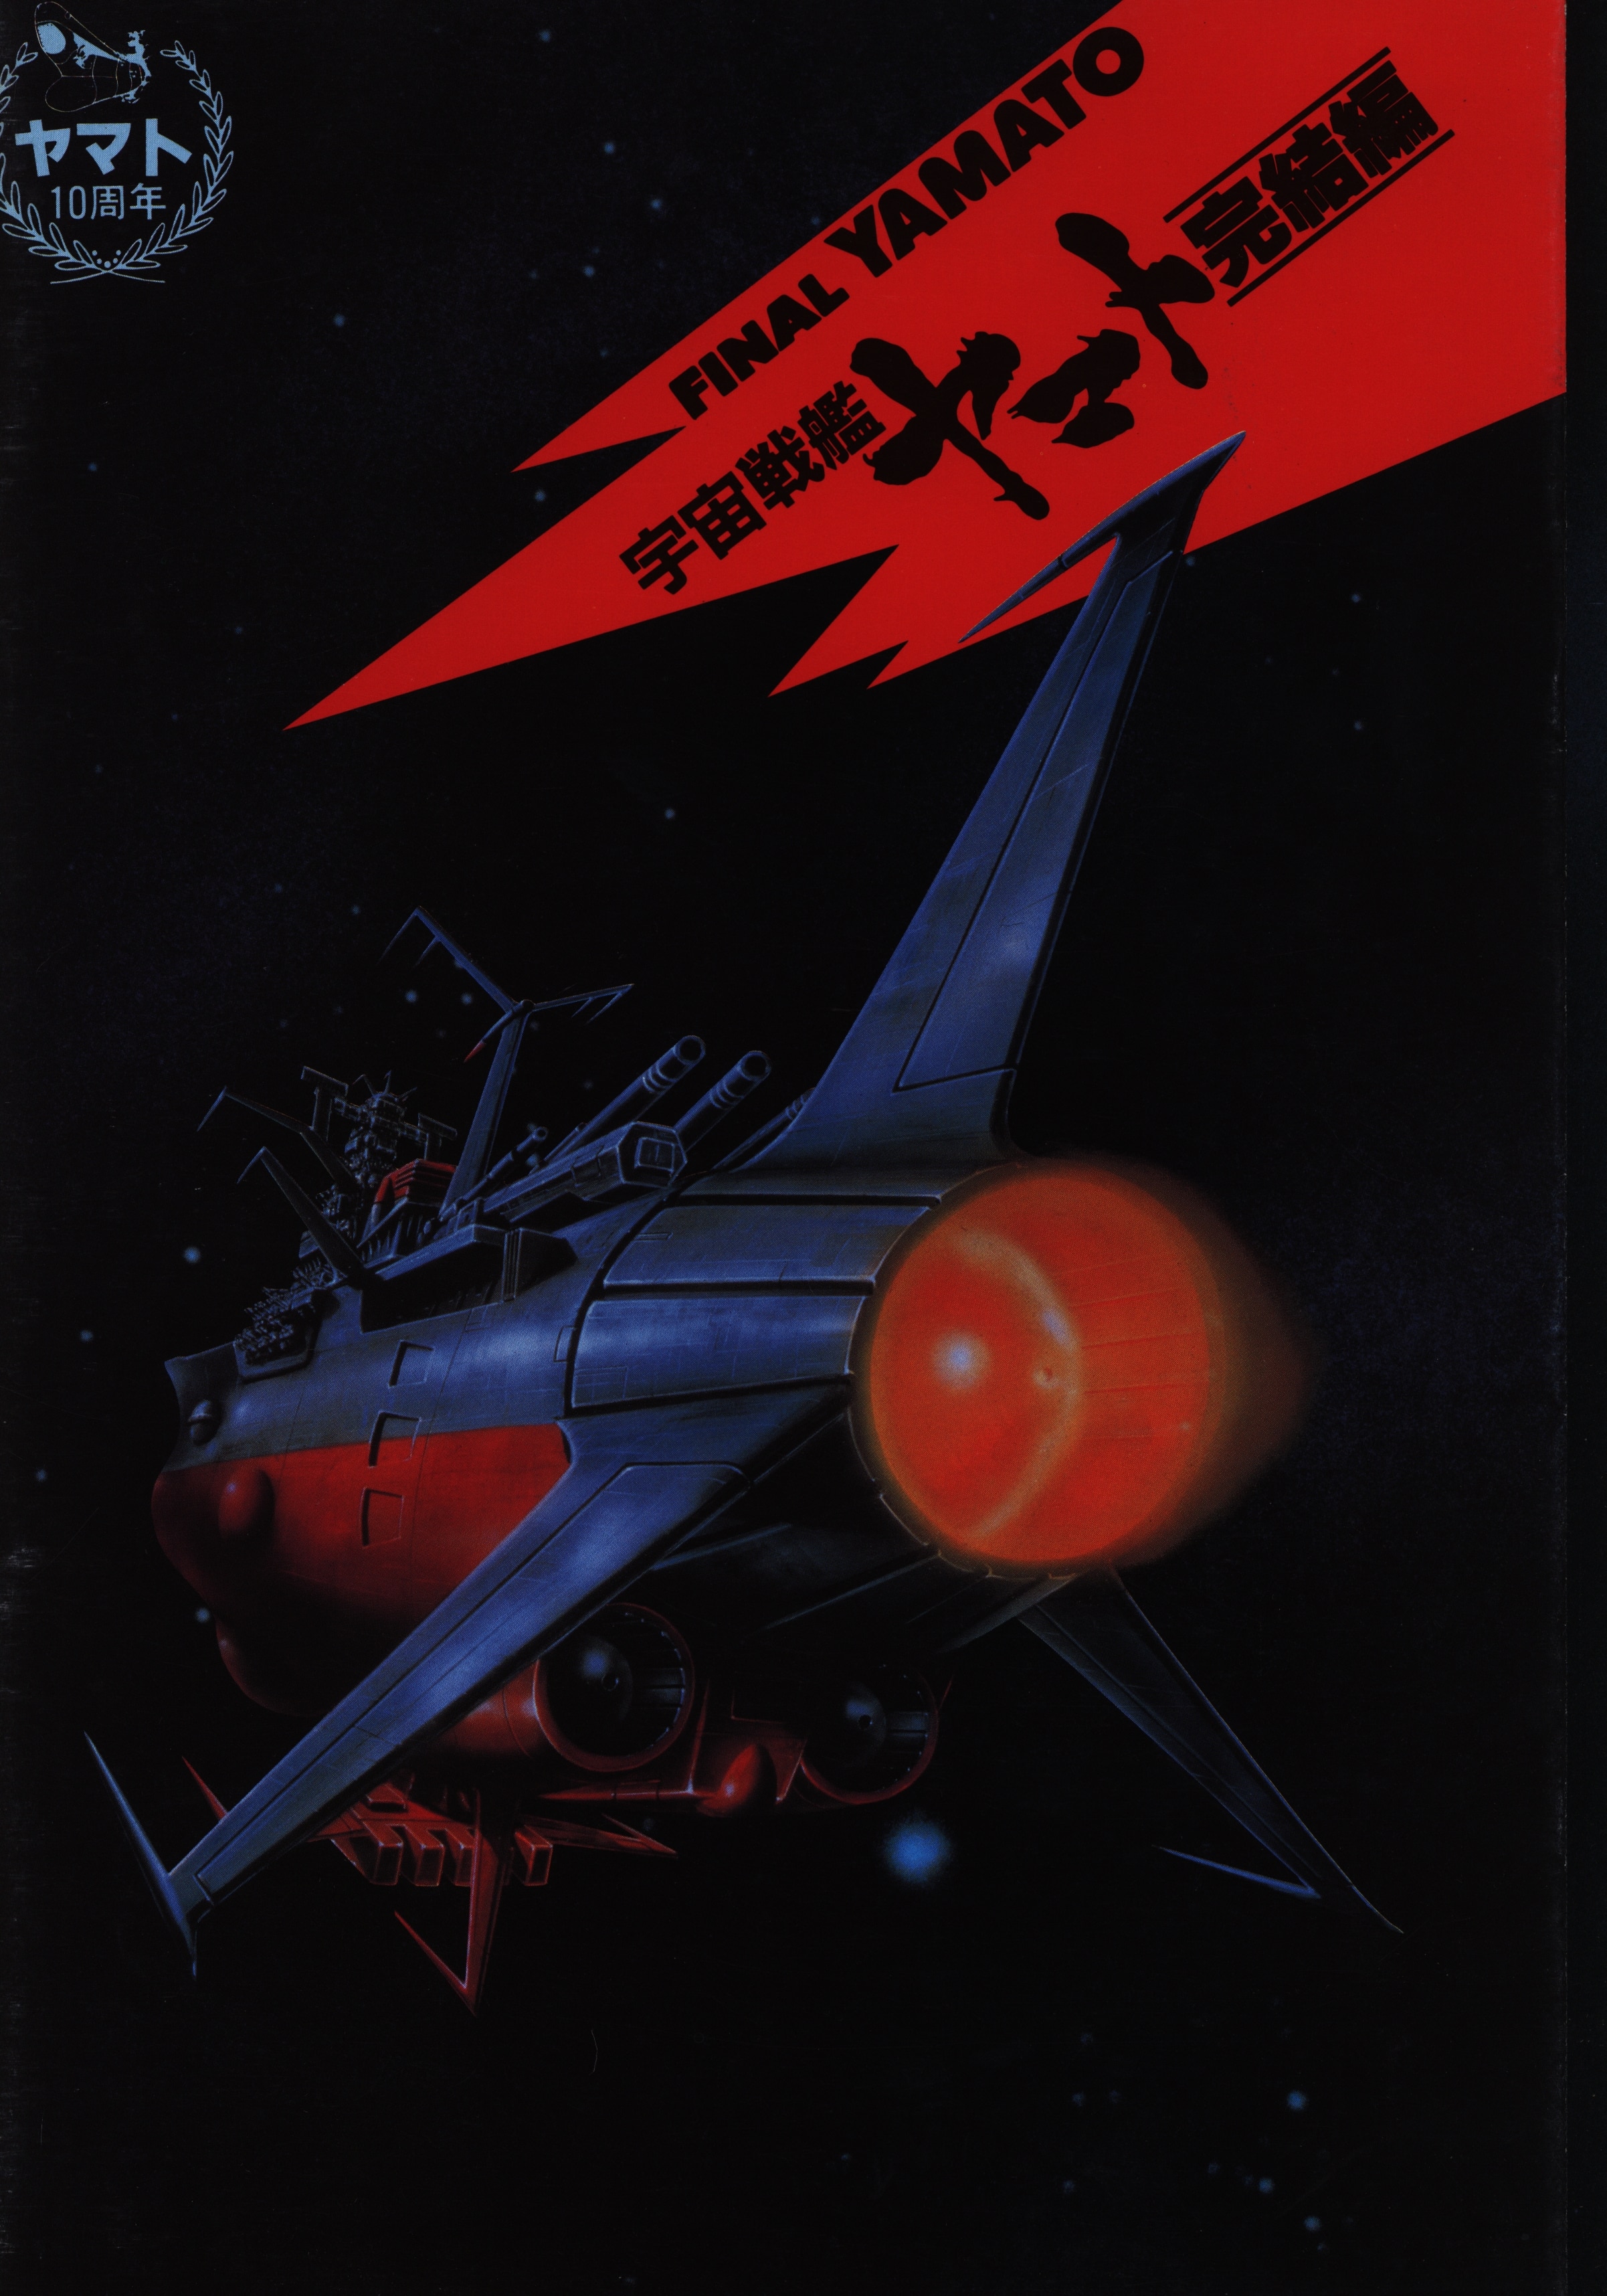 パンフレット 宇宙戦艦ヤマト 完結編(1983・初回上映・表紙宇宙版